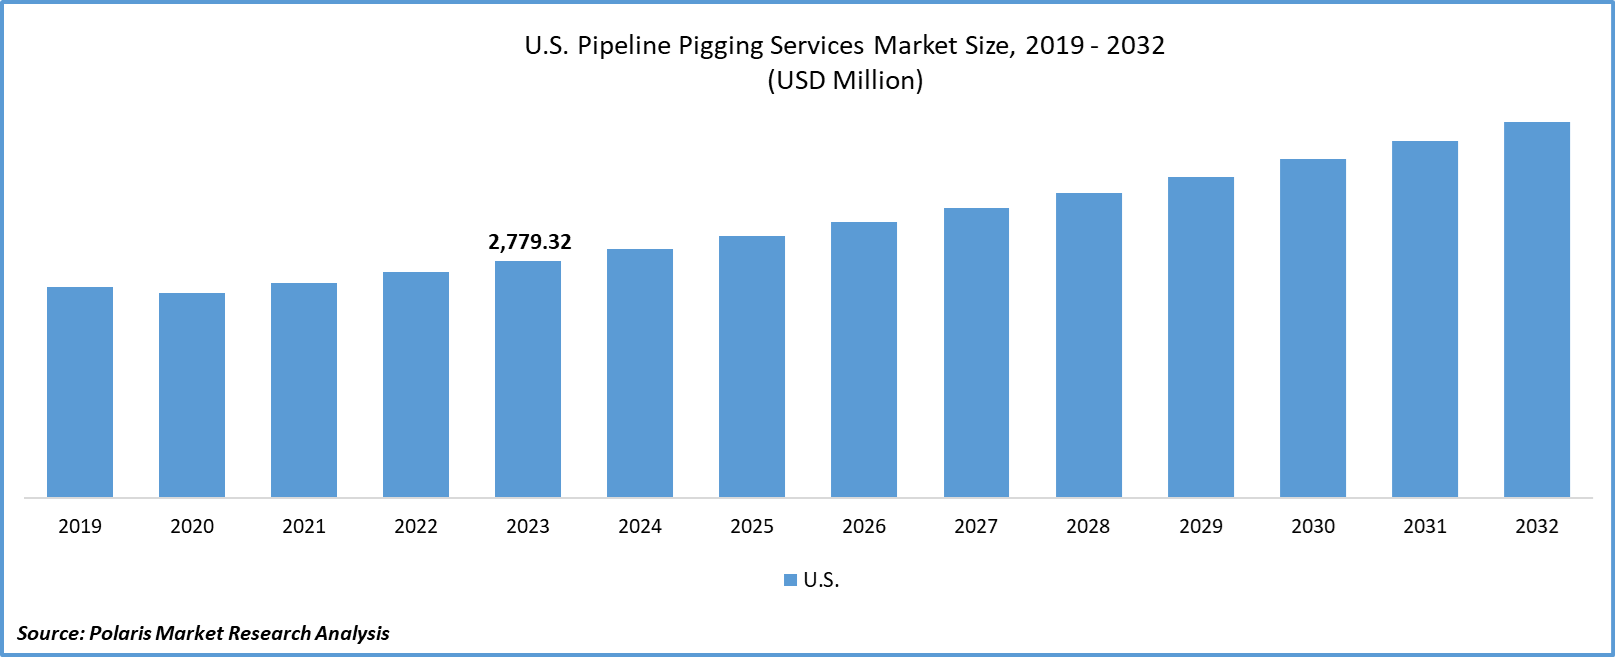 North America Pipeline Pigging Services Market Size